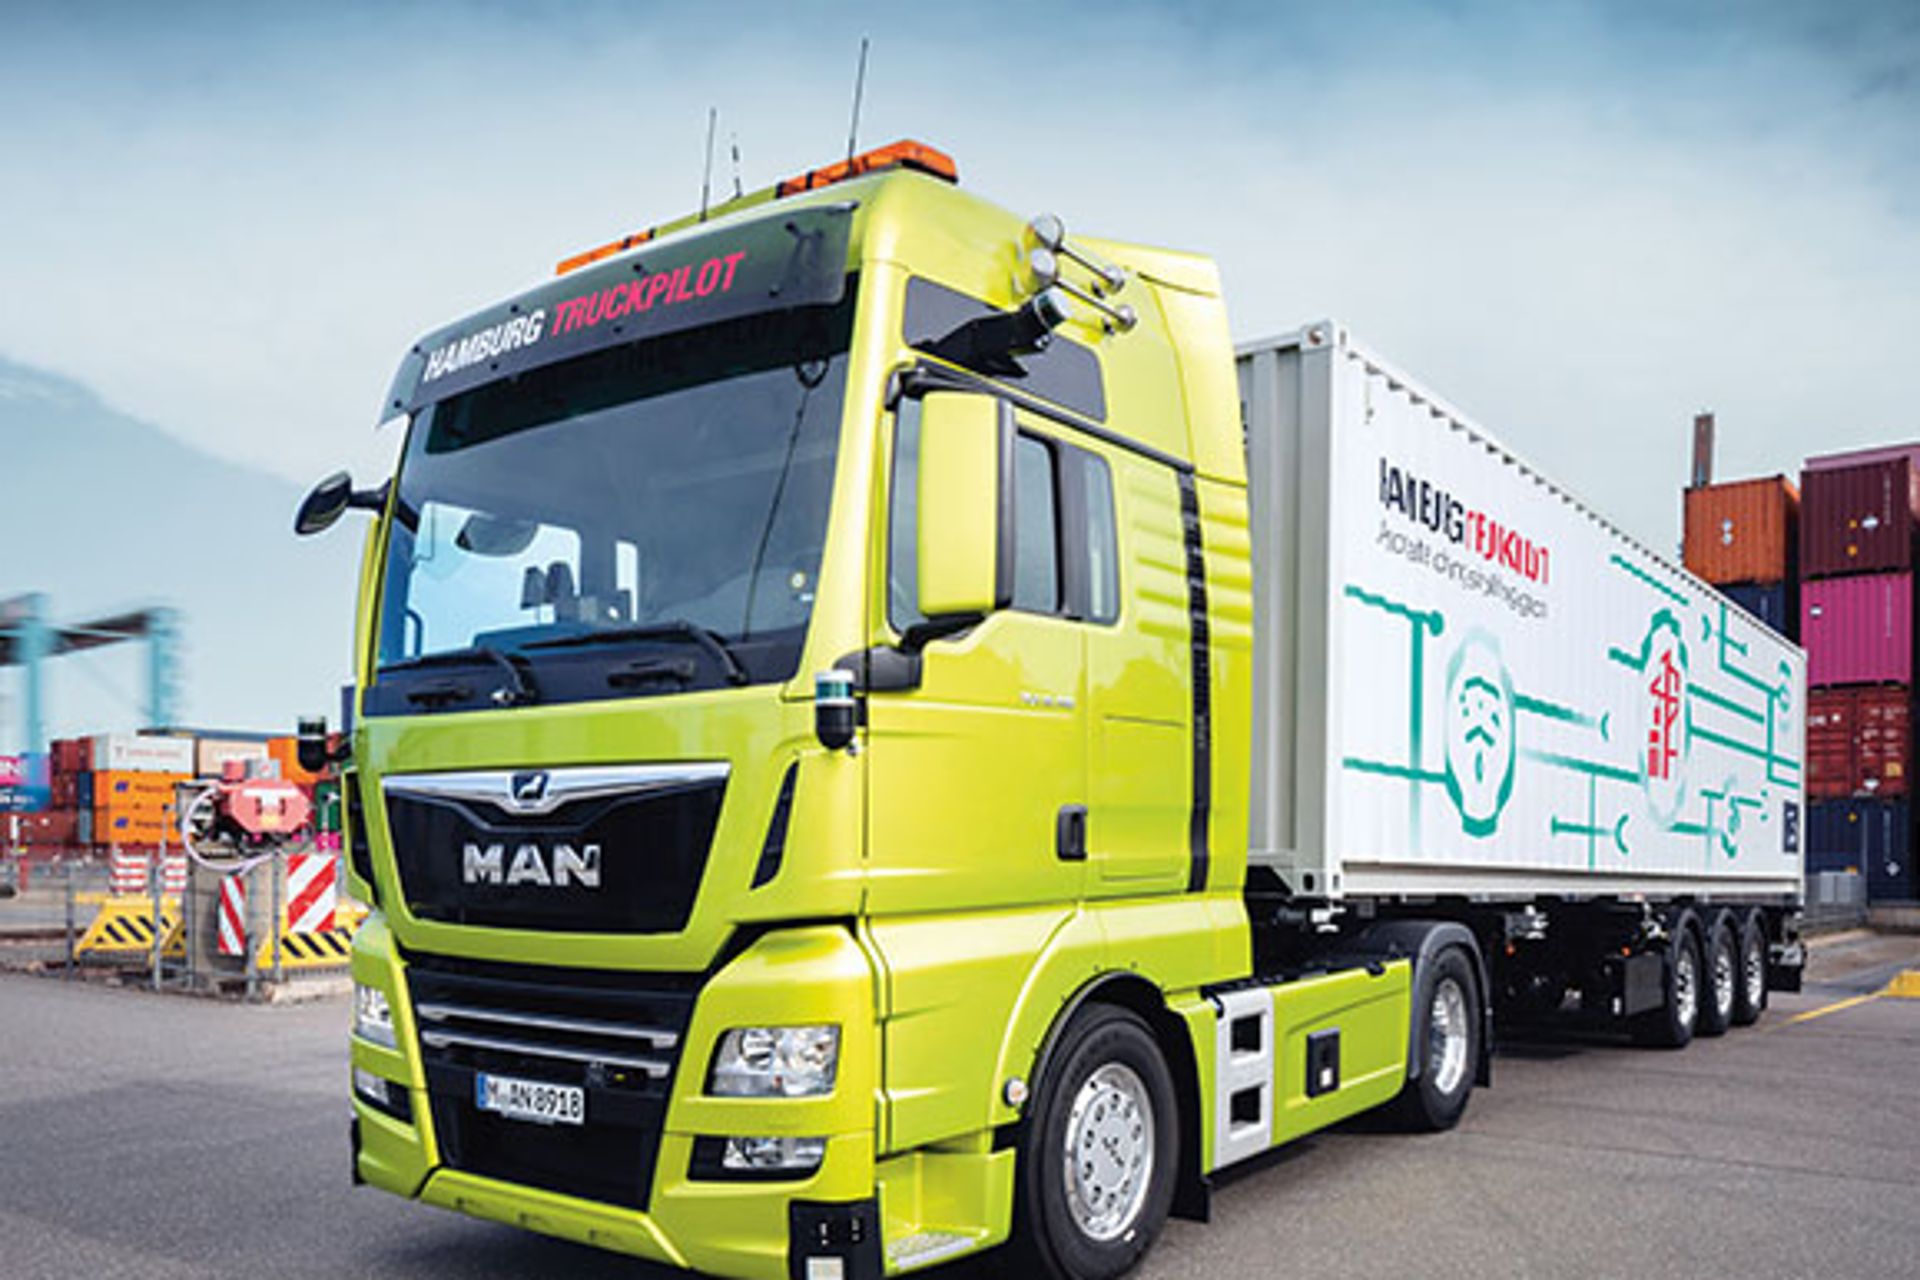 Gemeinsam mit der Hamburger Hafen und Logistik AG forscht MAN an hochautomatisierten und autonomen Lkw.
                 